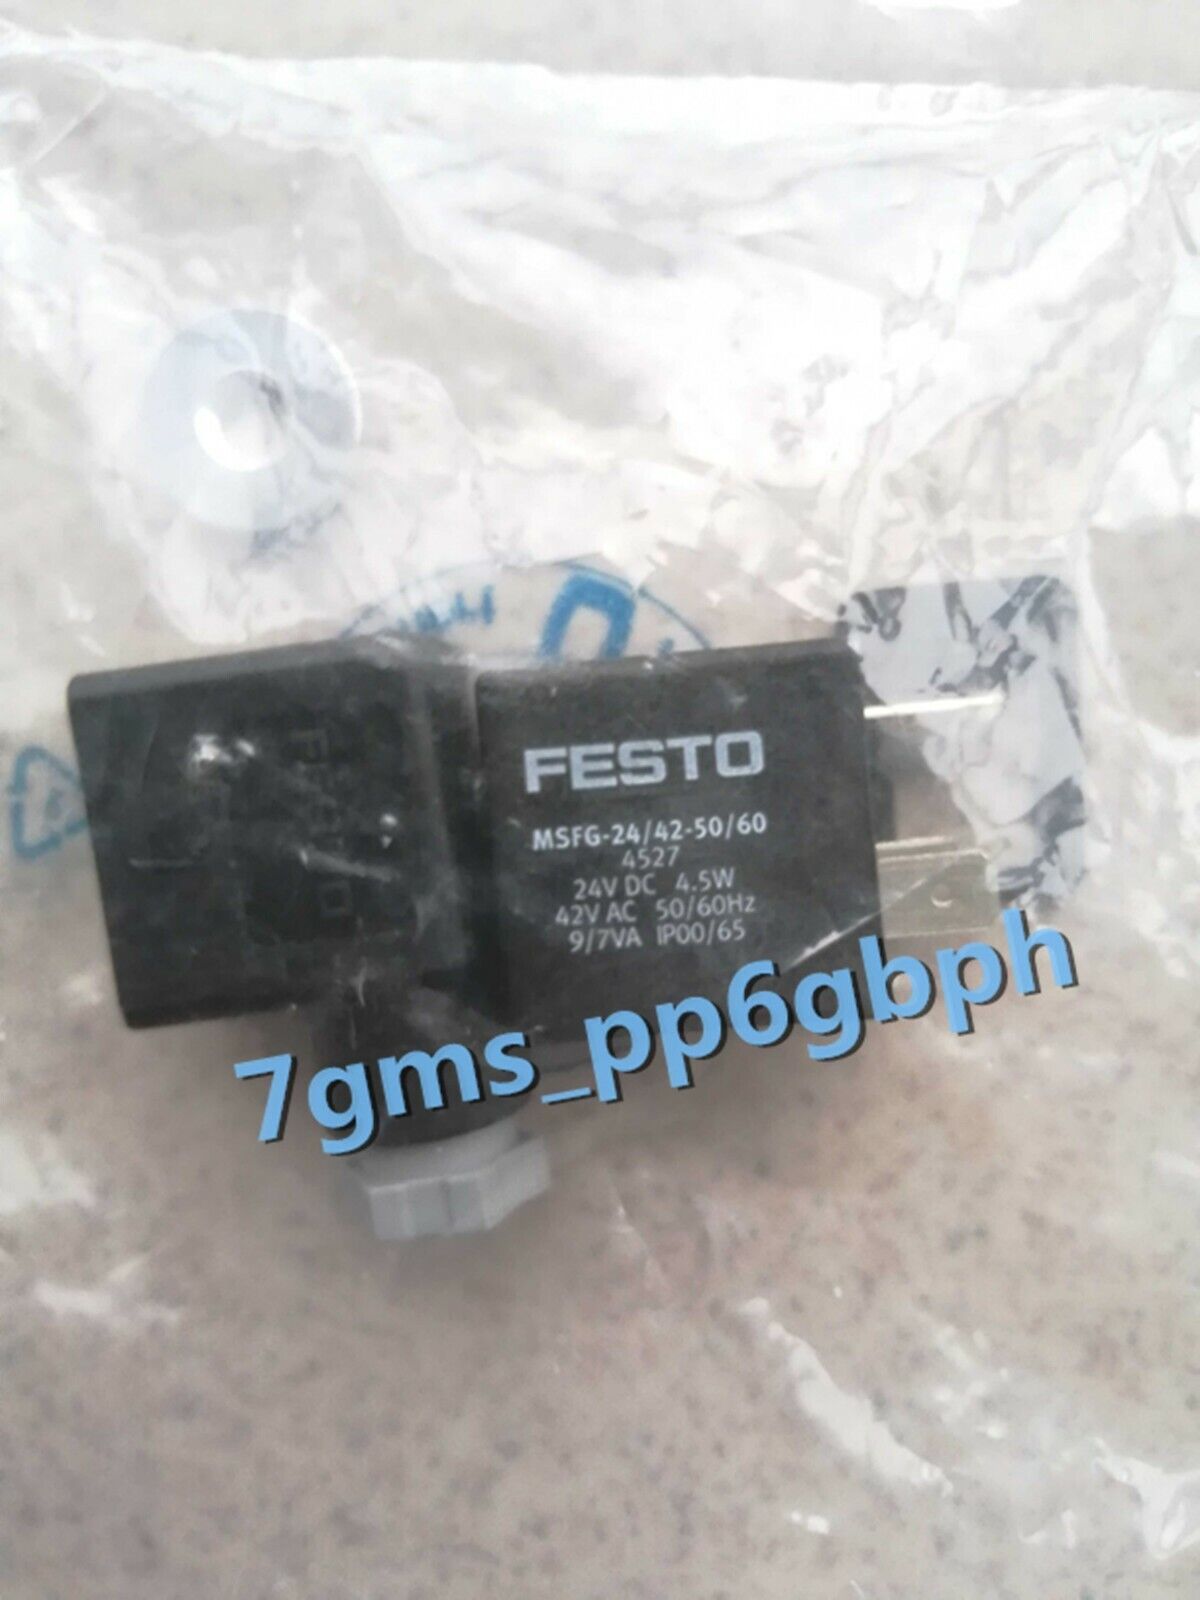 1 PCS NEW FESTO coil MSFG-24/42-50/60 4527